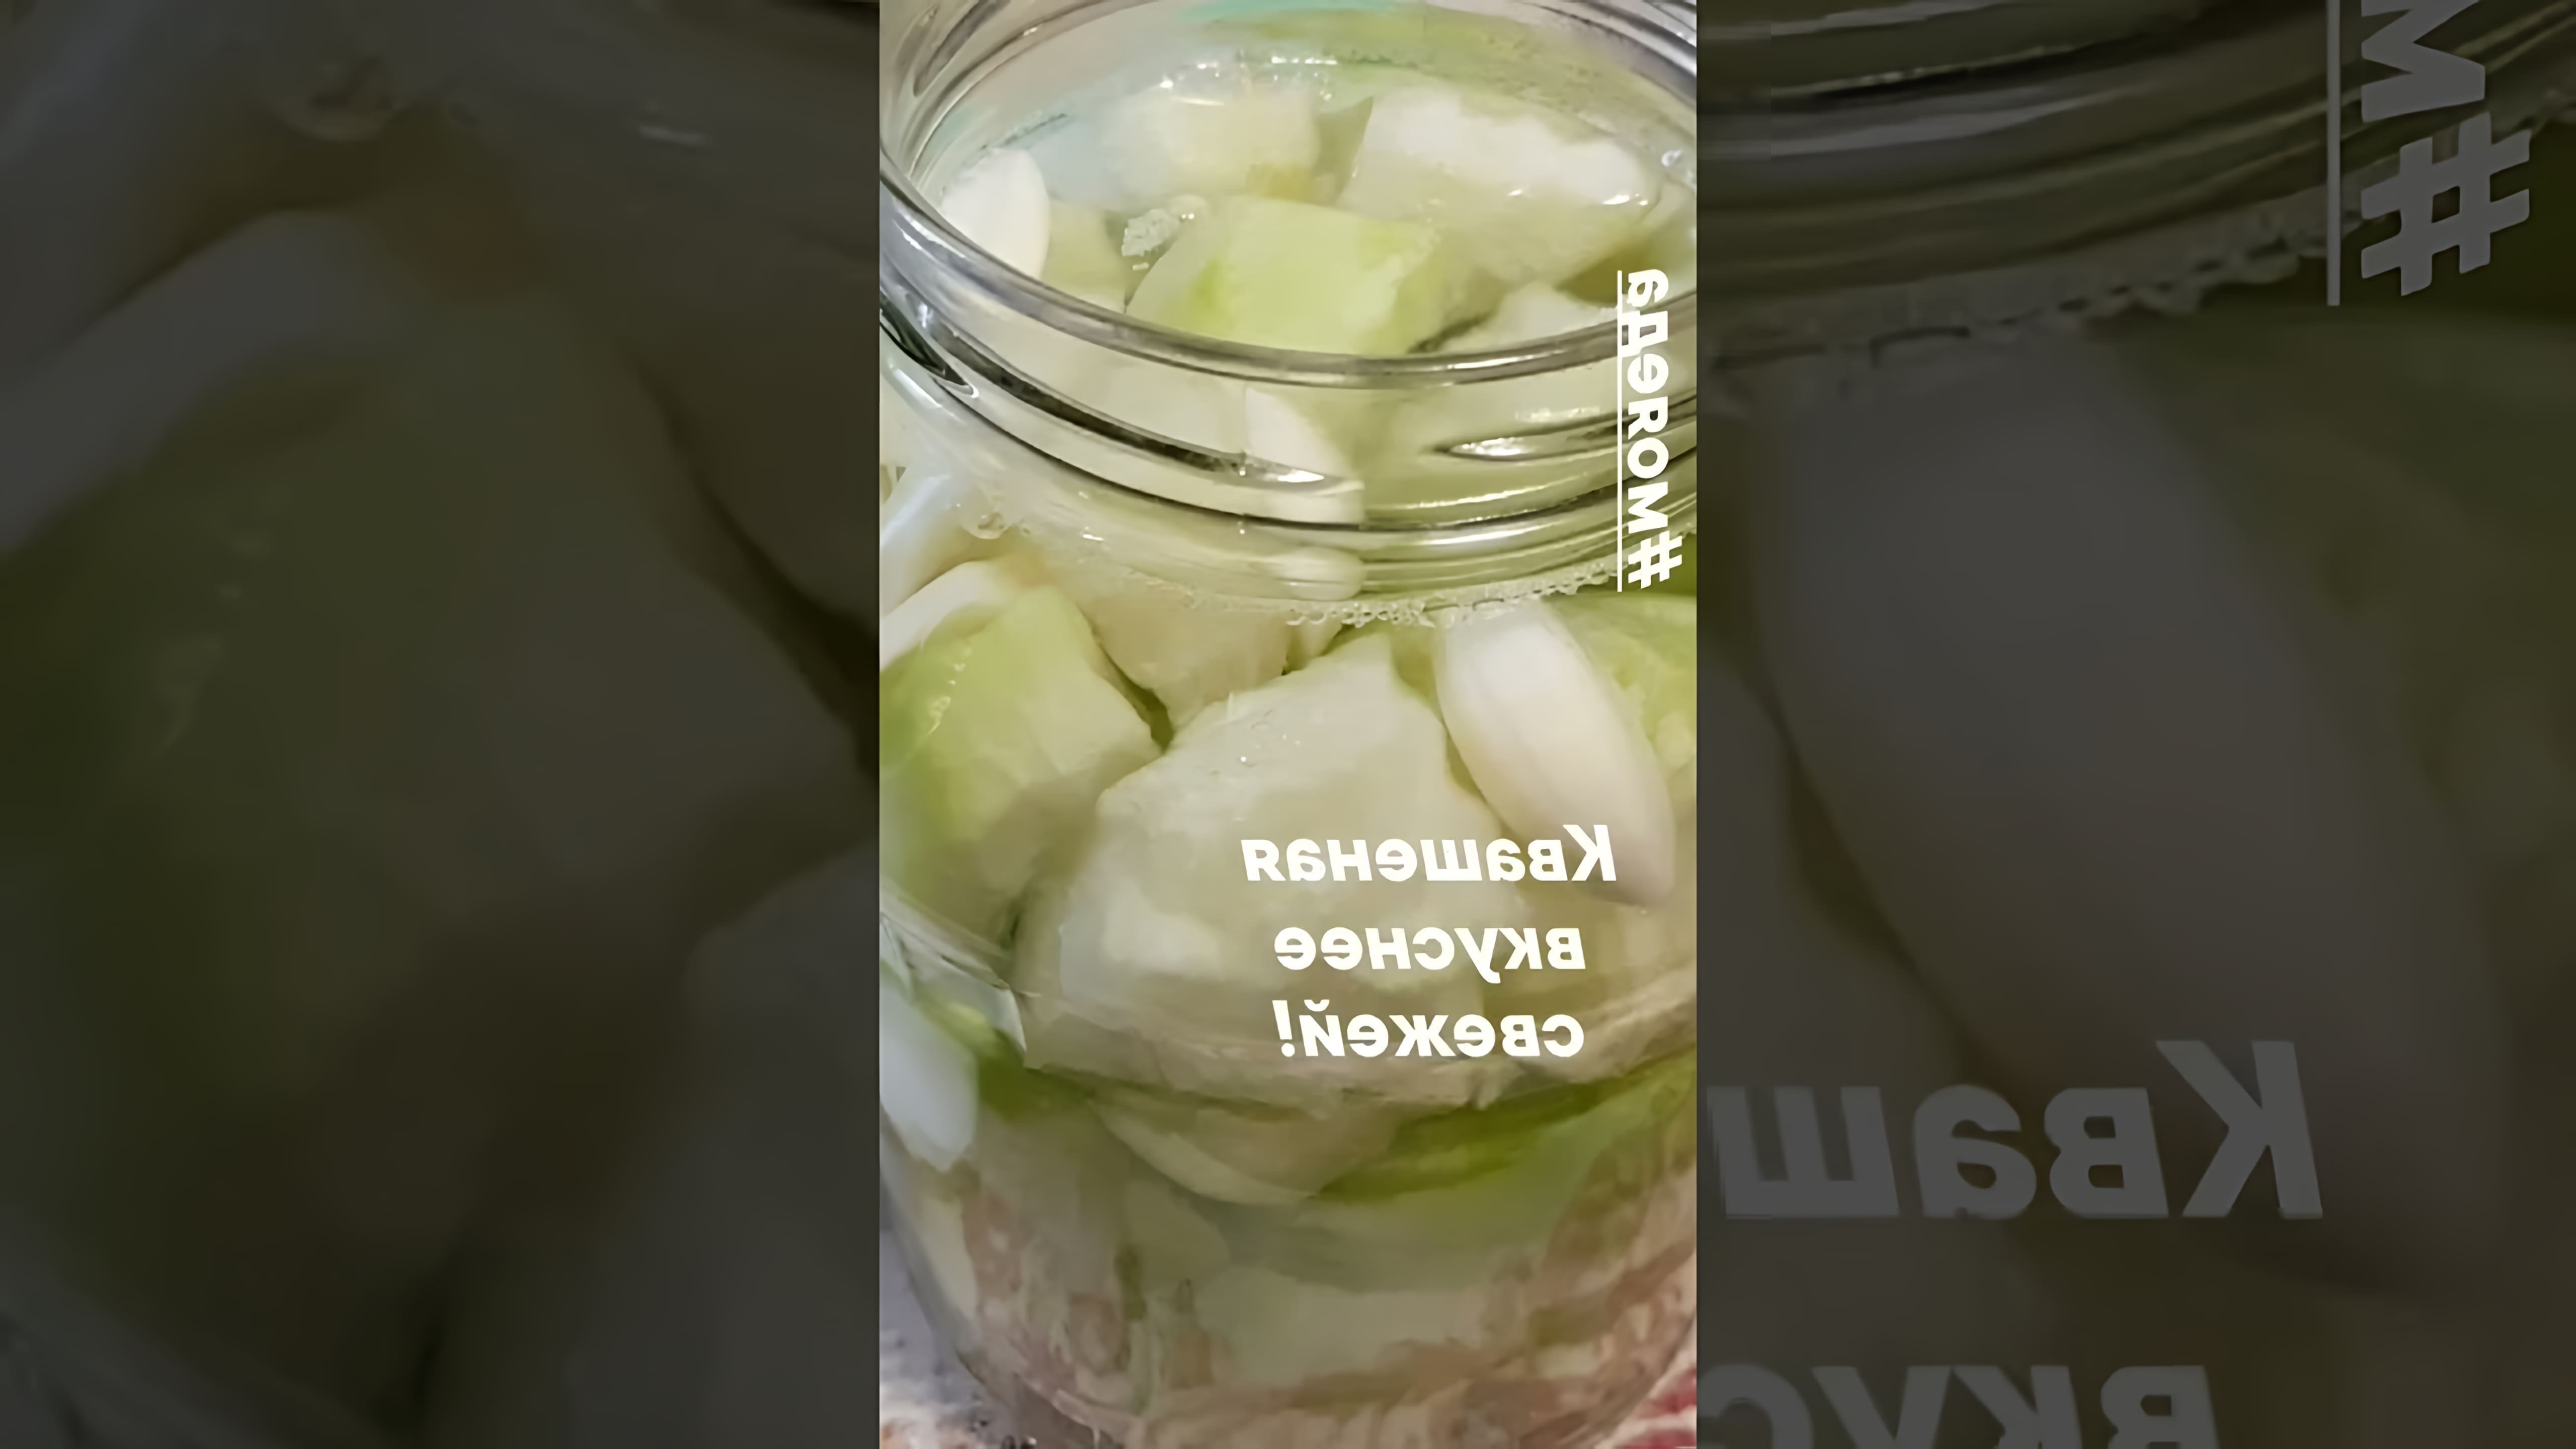 В этом видео-ролике рассказывается о квашеной (ферментированной) зеленой редьке, которую можно приготовить самостоятельно